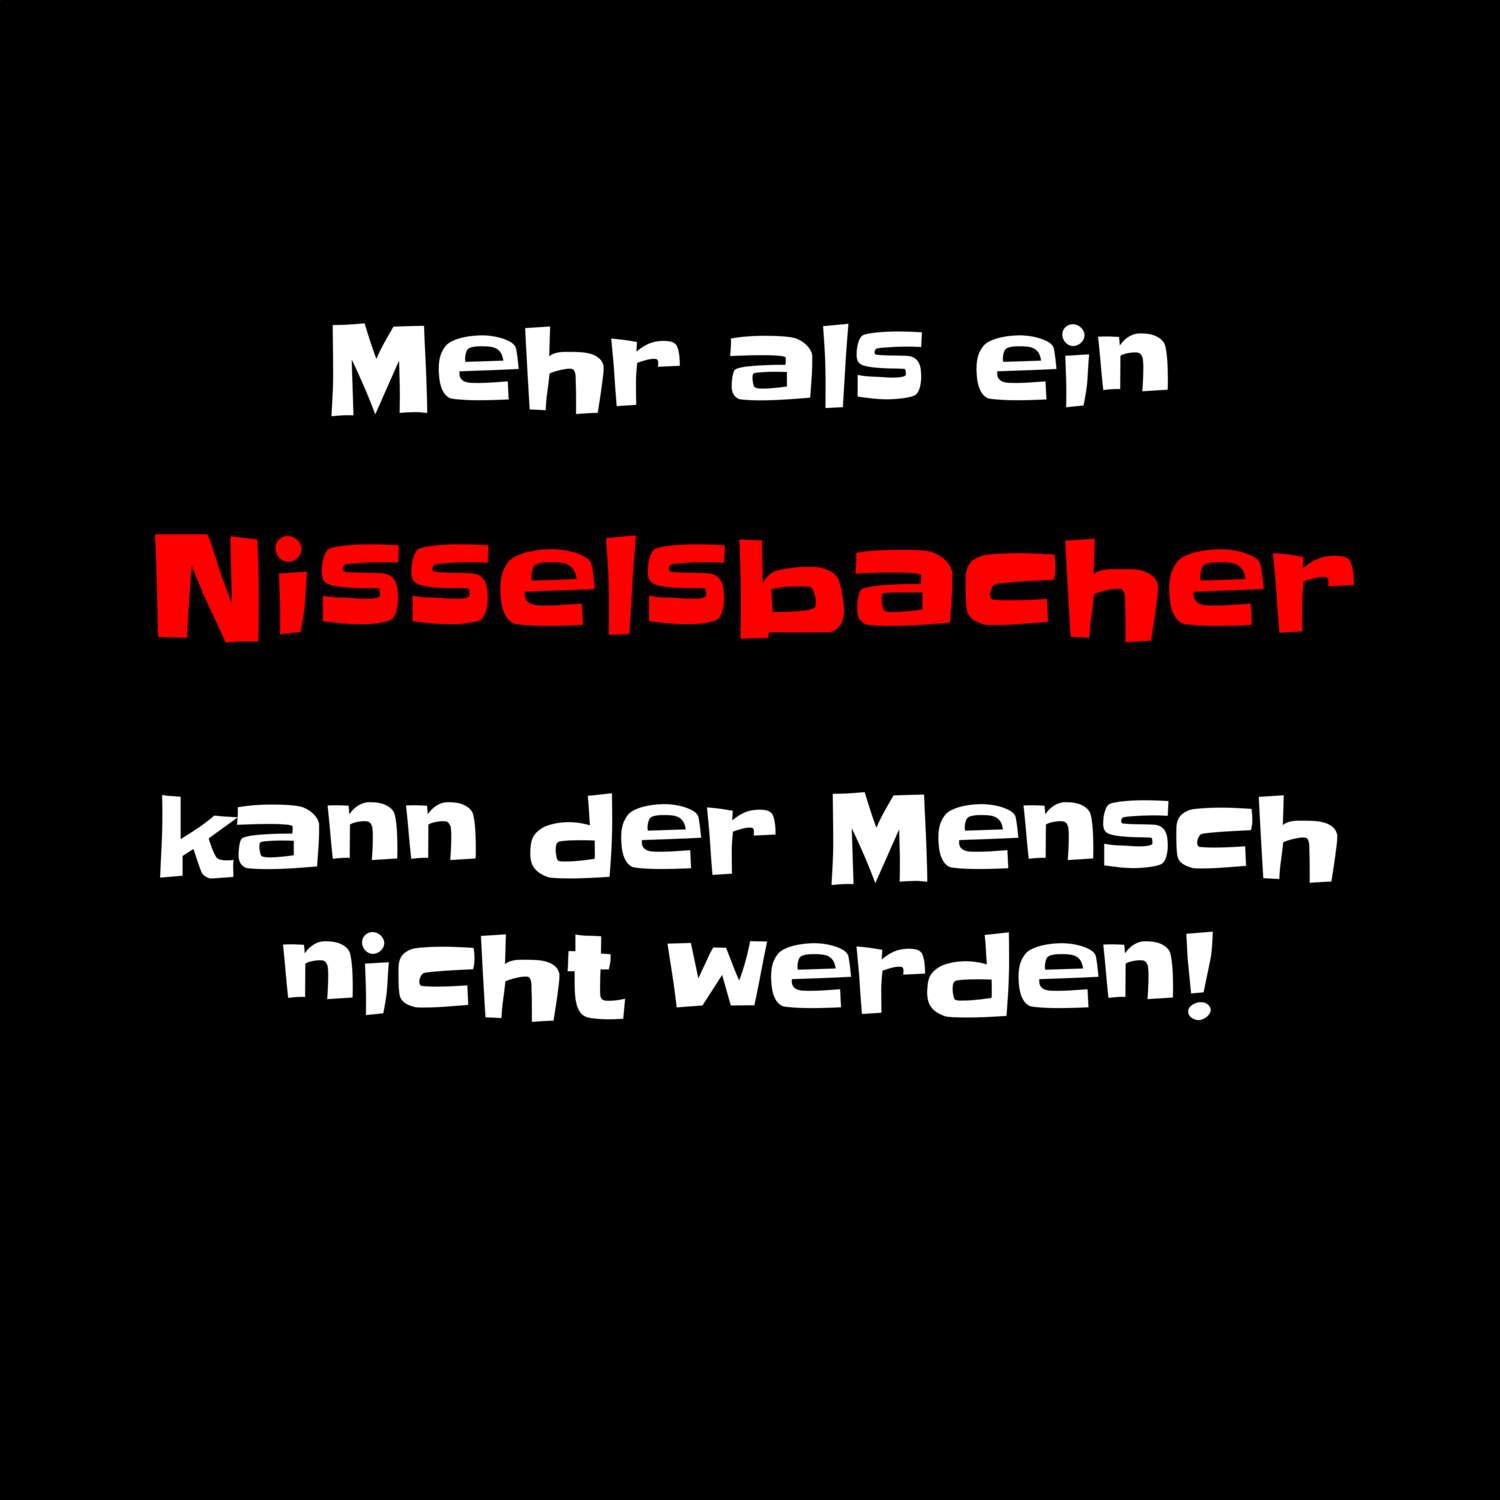 Nisselsbach T-Shirt »Mehr als ein«